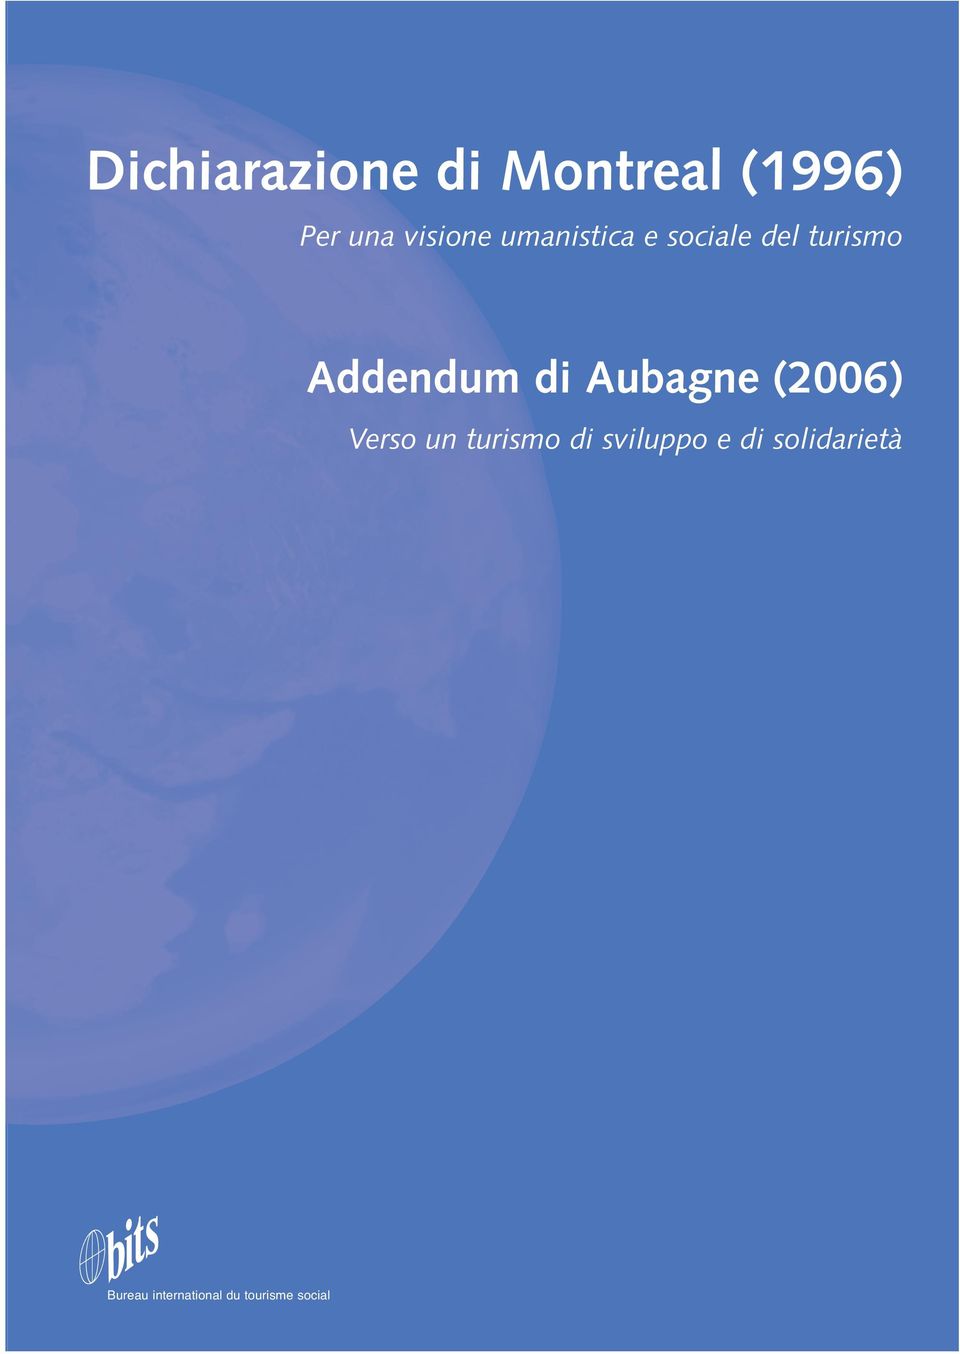 Aubagne (2006) Verso un turismo di sviluppo e di